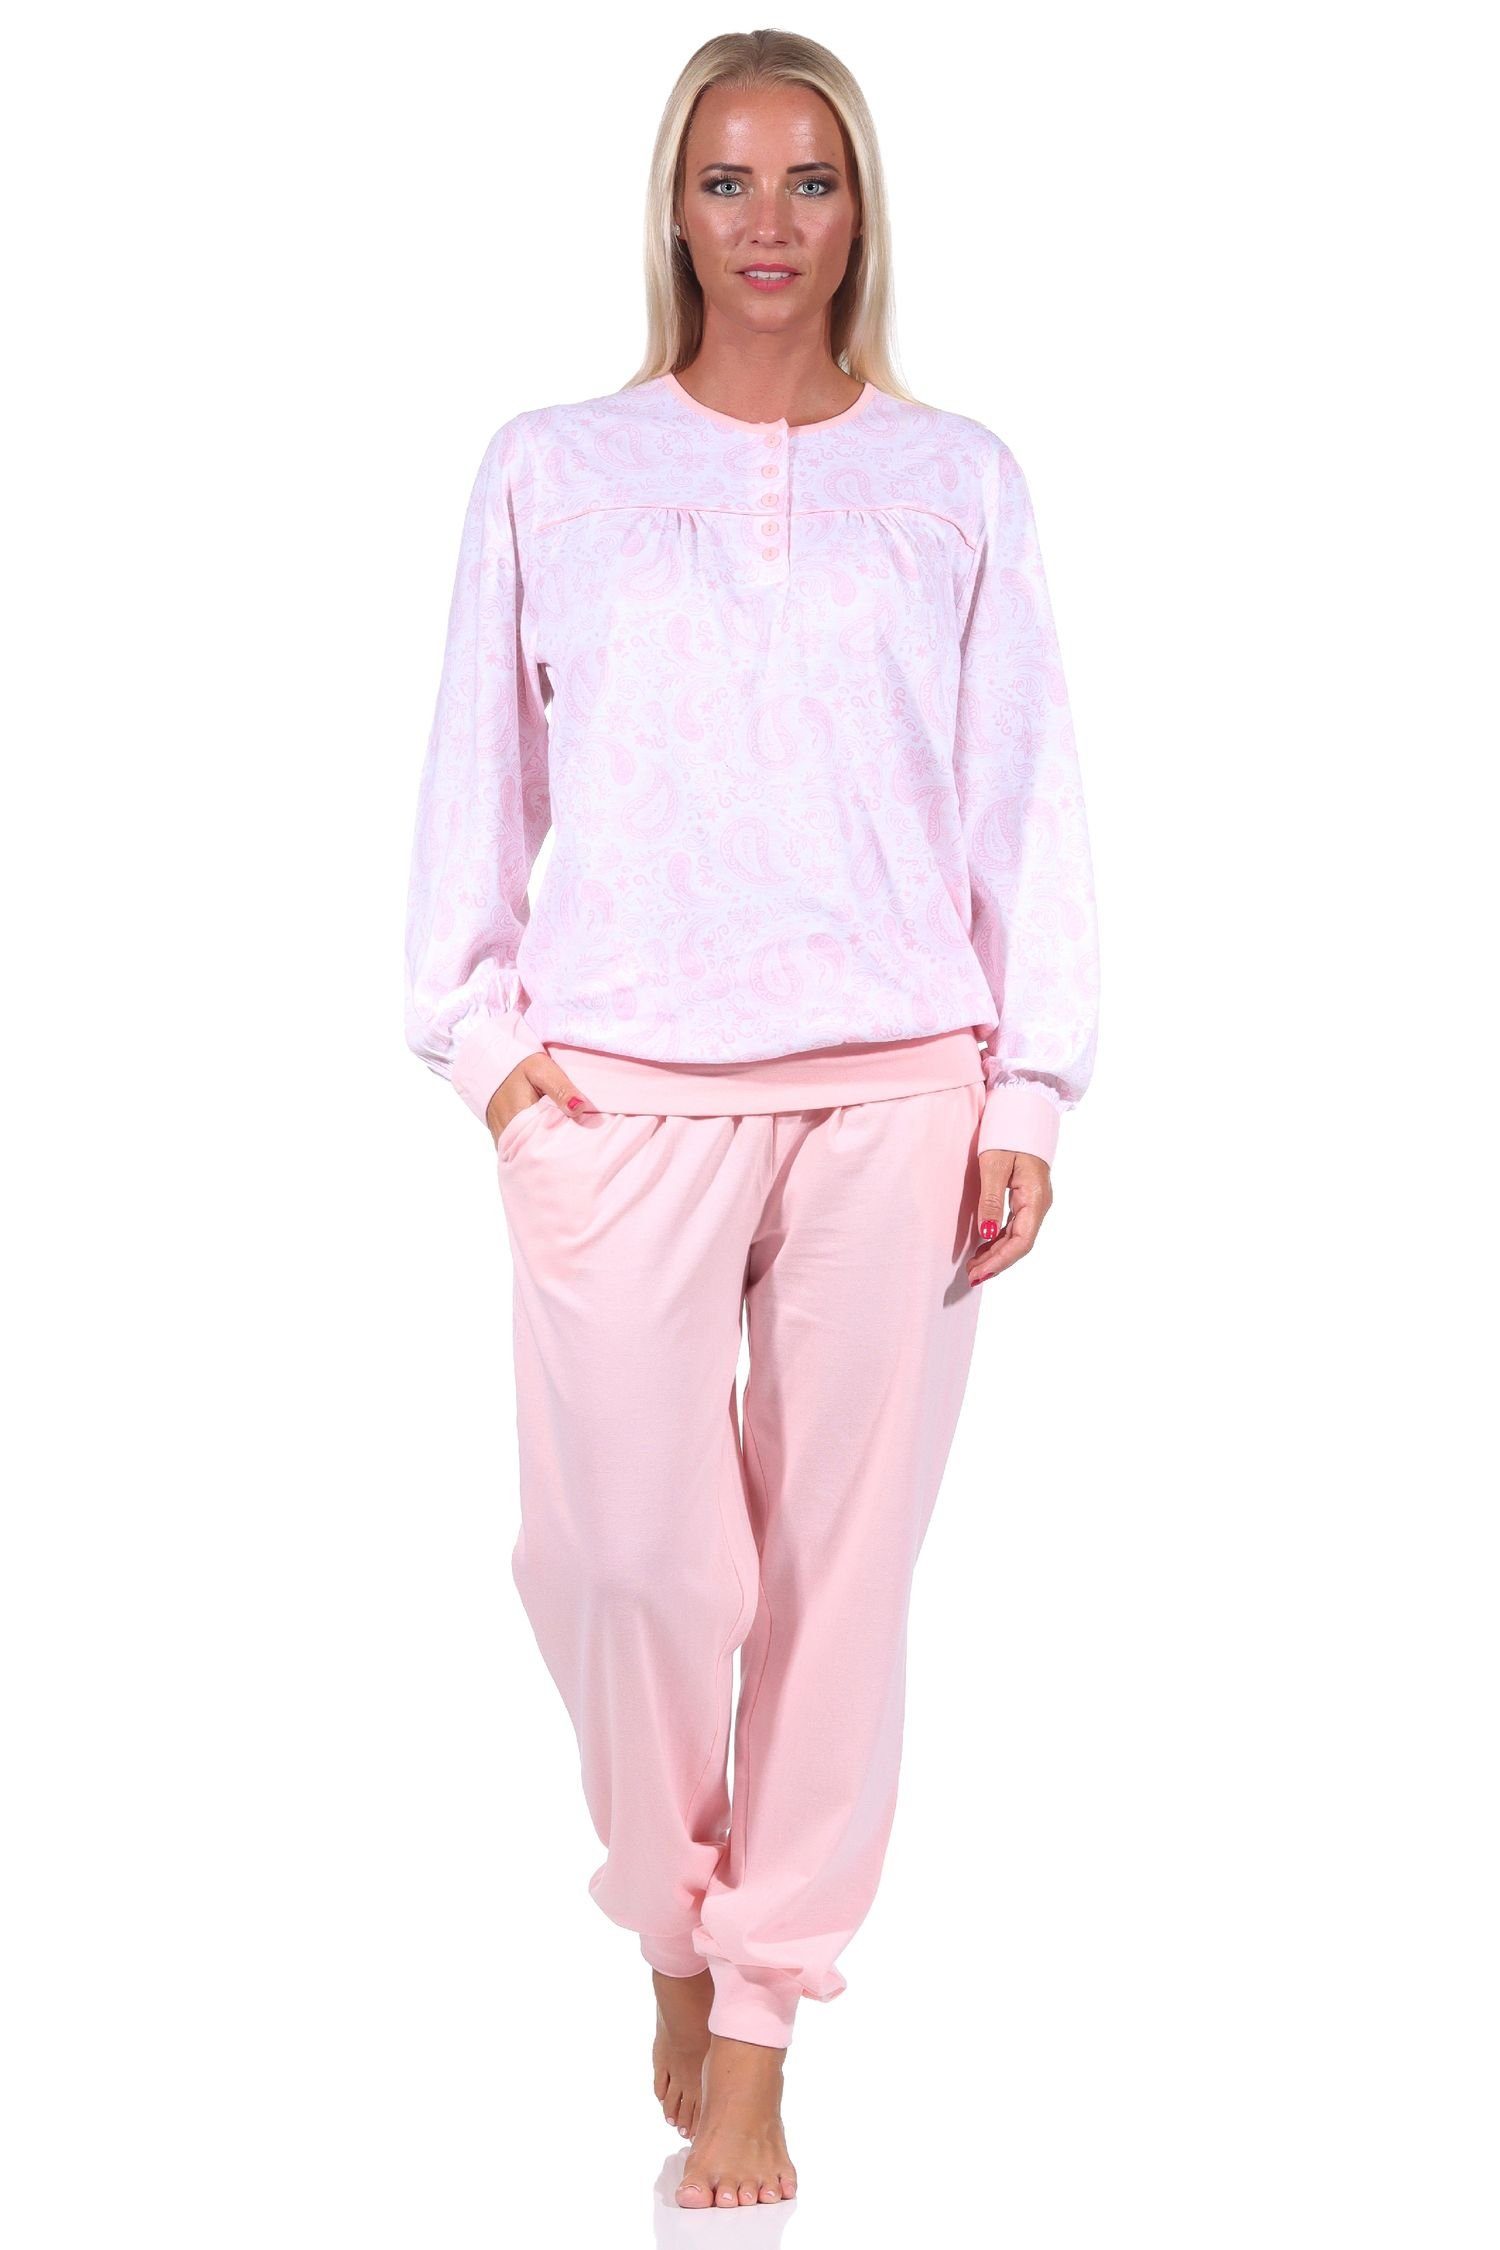 Damen Hals Bündchen + Schlafanzug am Design Knopfleiste rosa Paisley mit Pyjama Normann